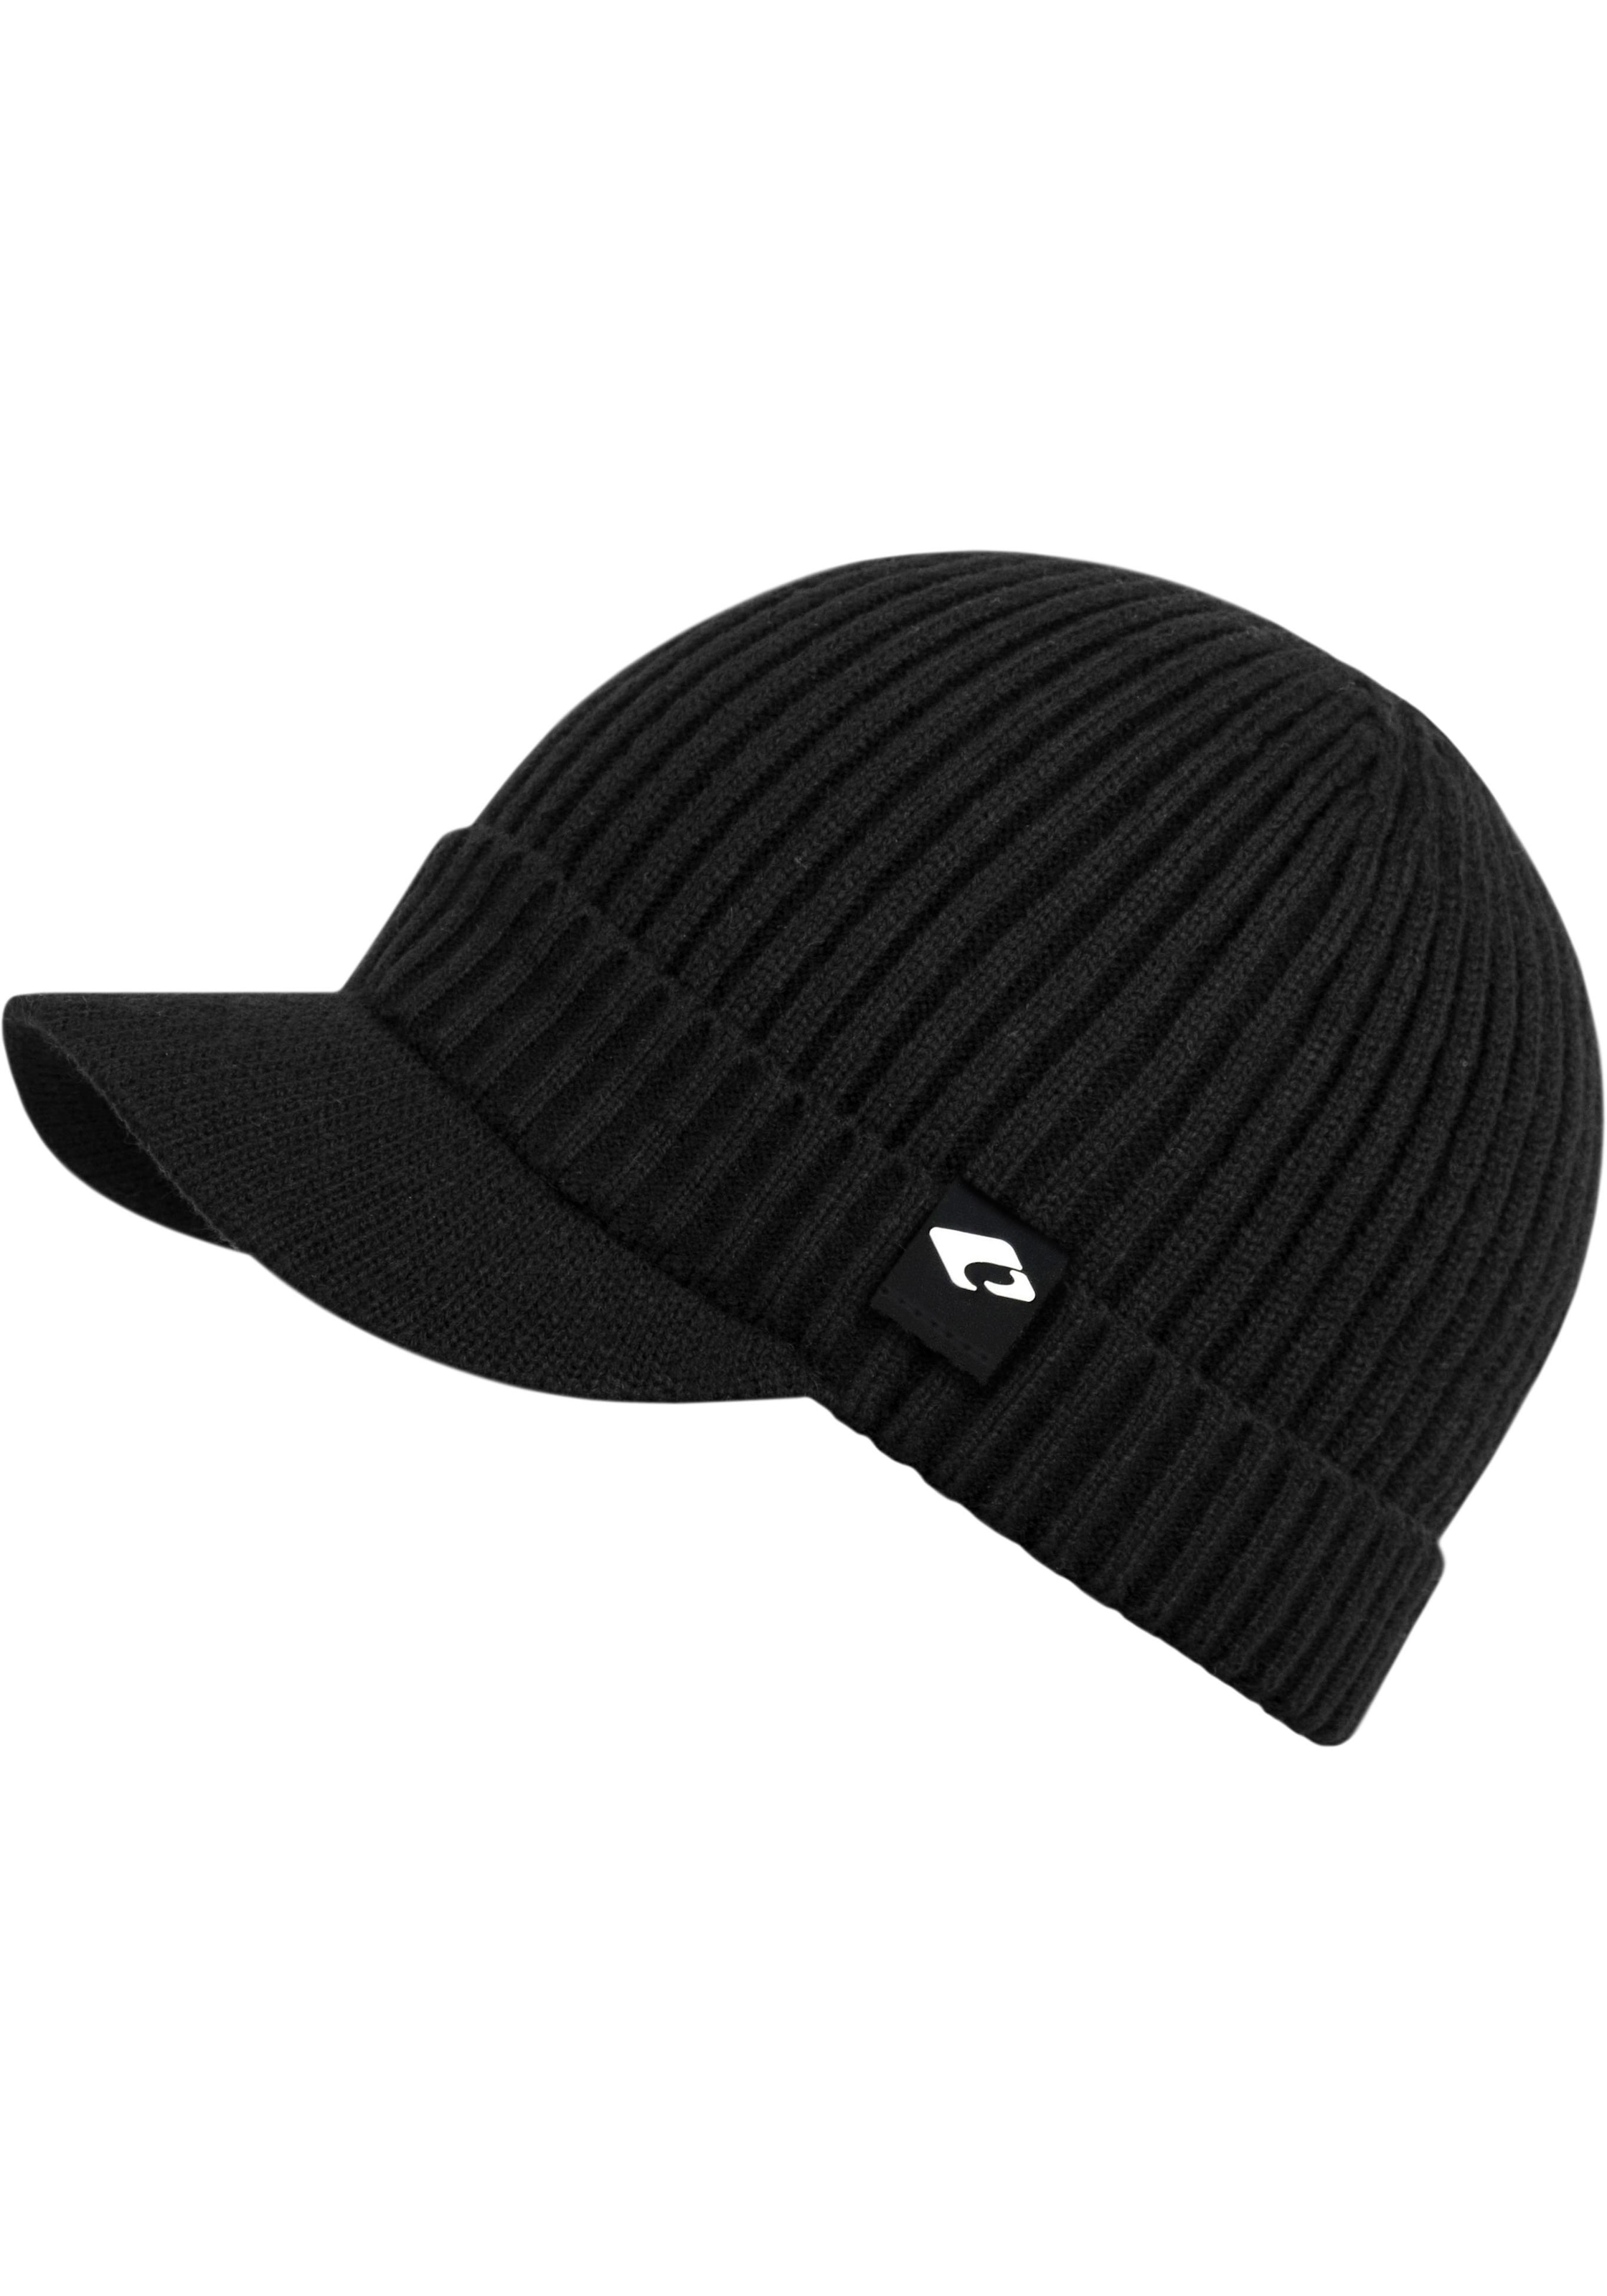 chillouts Strickmütze »Benno Hat«, Benno Hat online shoppen bei OTTO